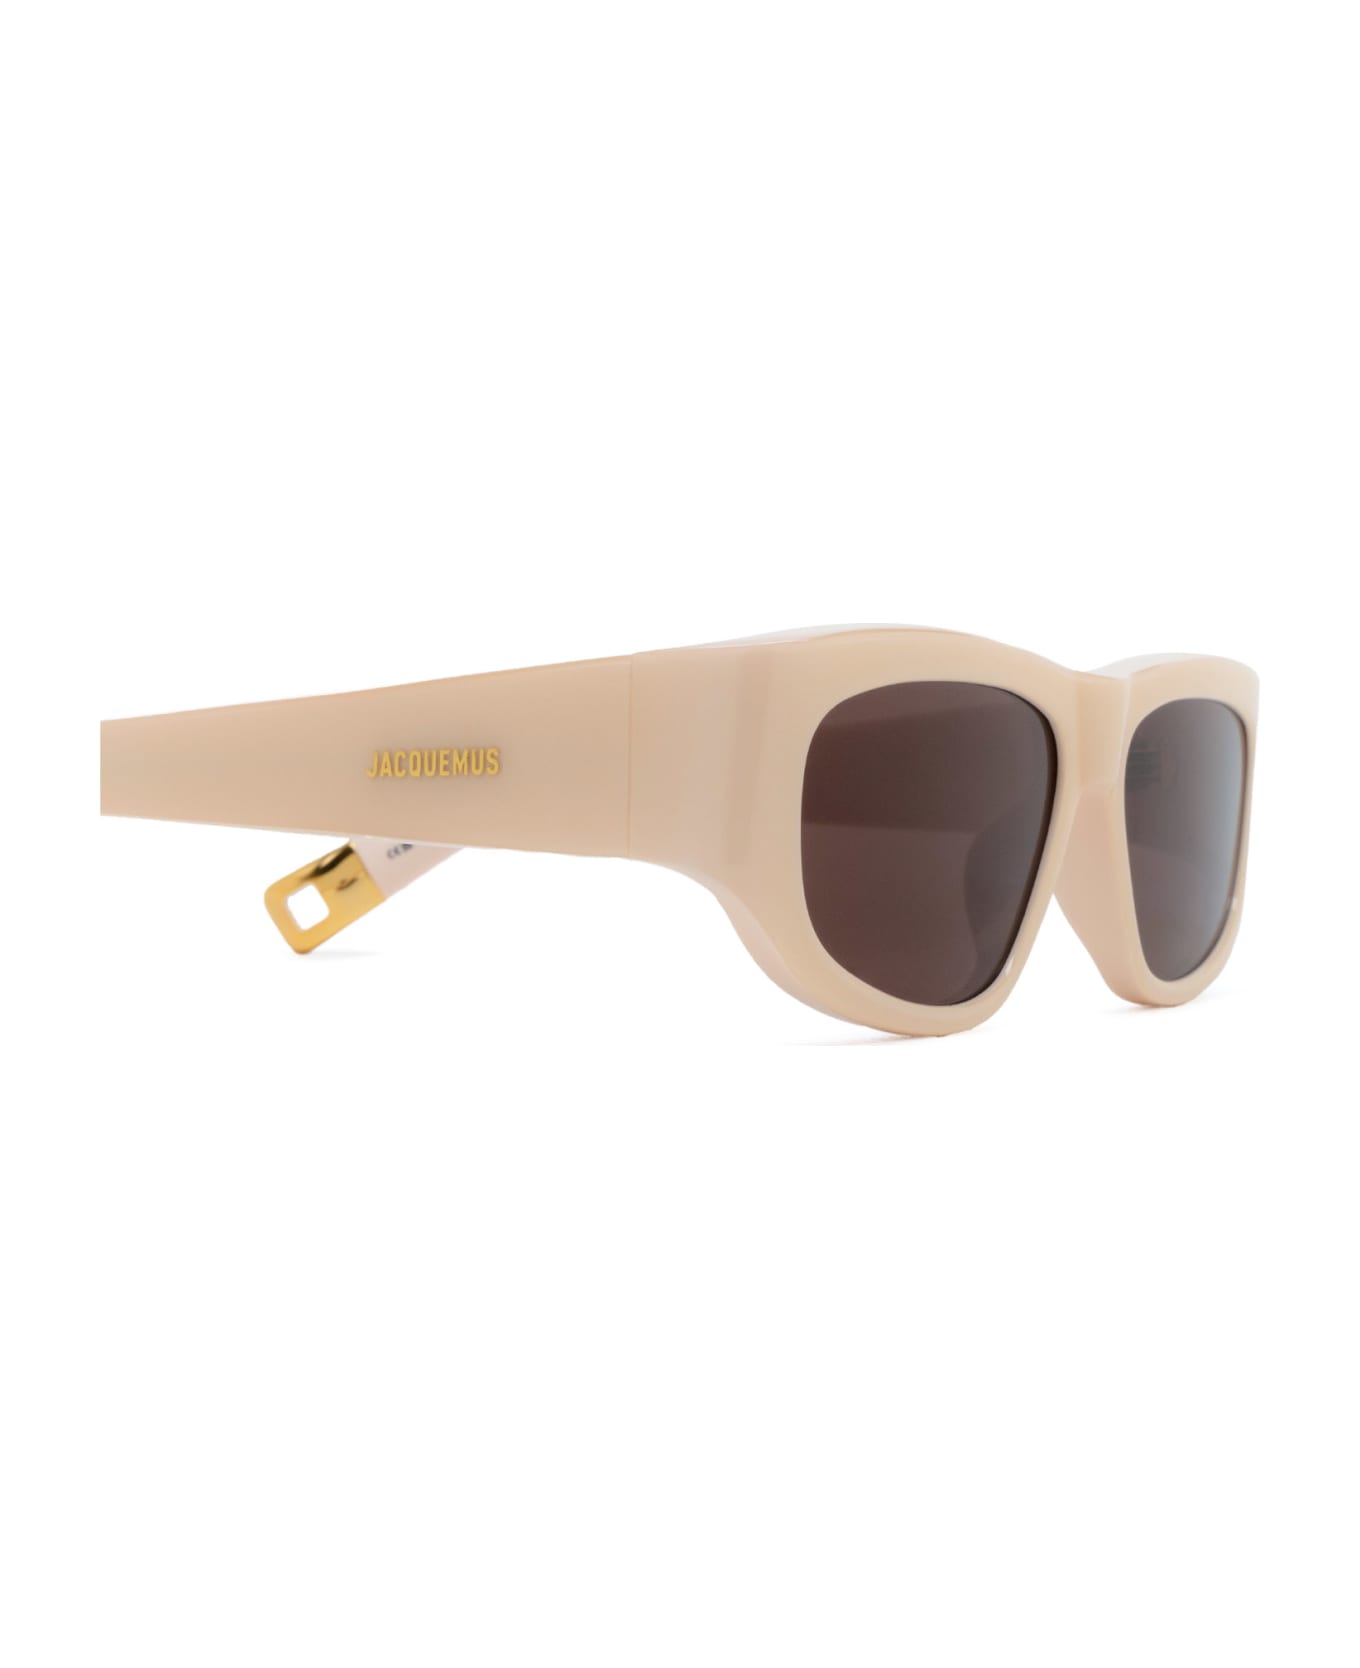 Jacquemus Jac2 Cream Sunglasses - Cream サングラス